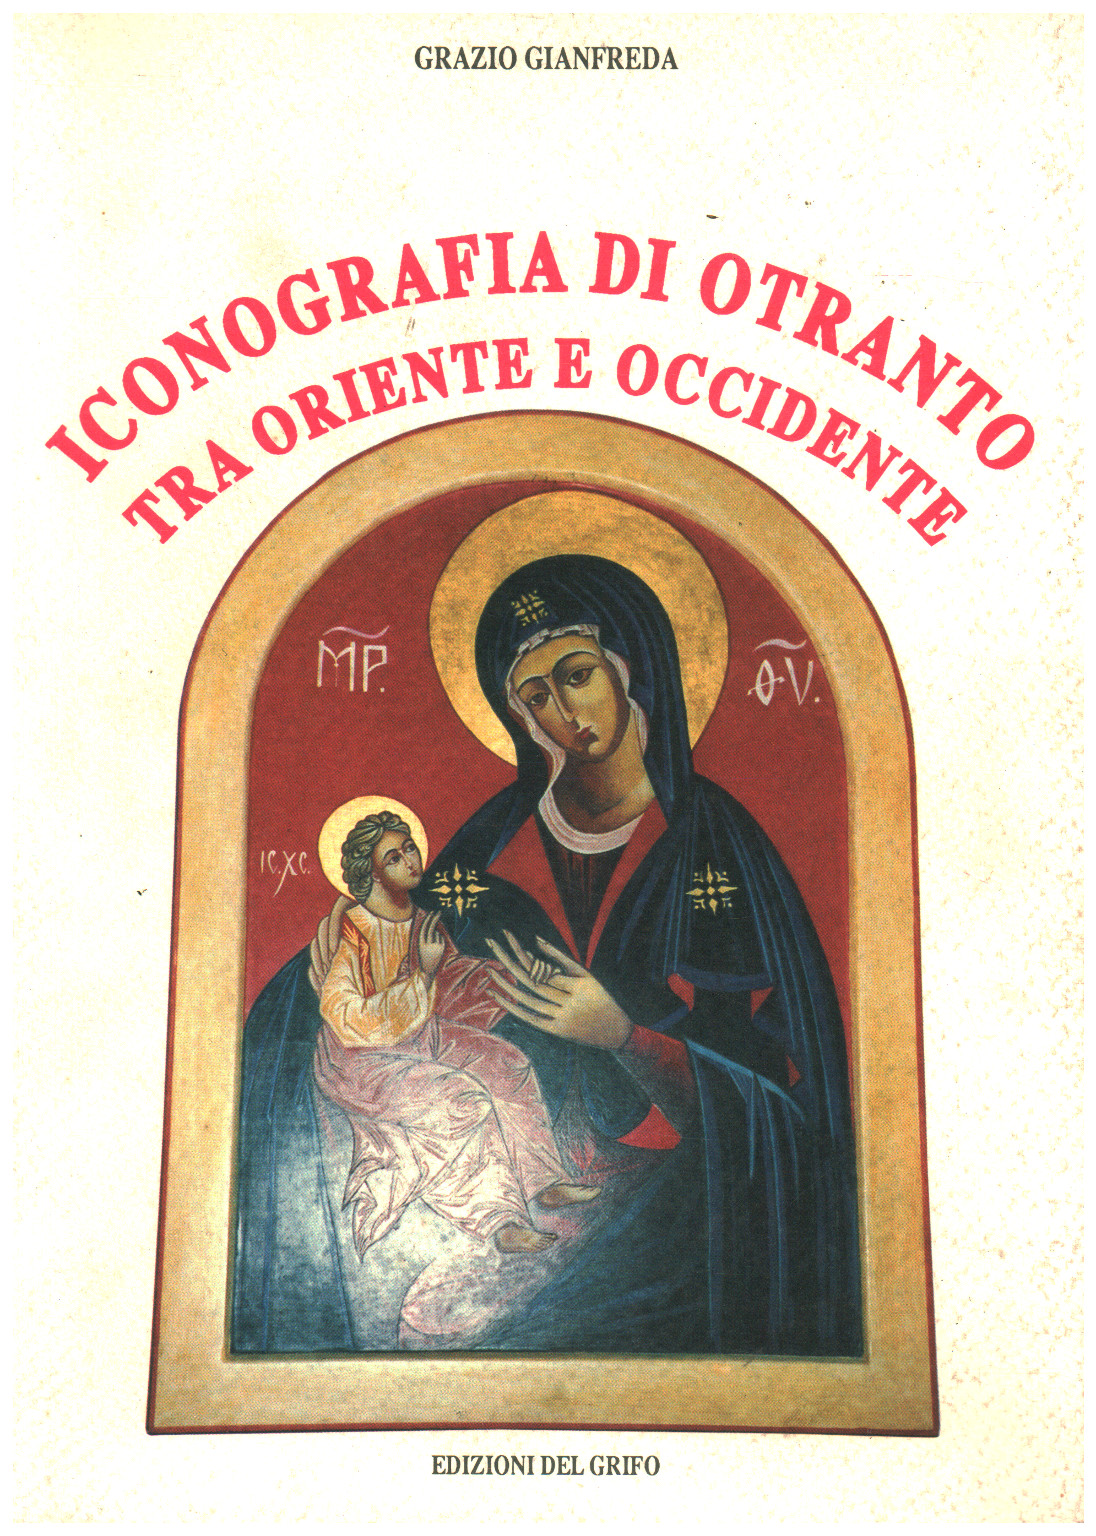 Iconografia di Otranto tra oriente e occidente, s.a.